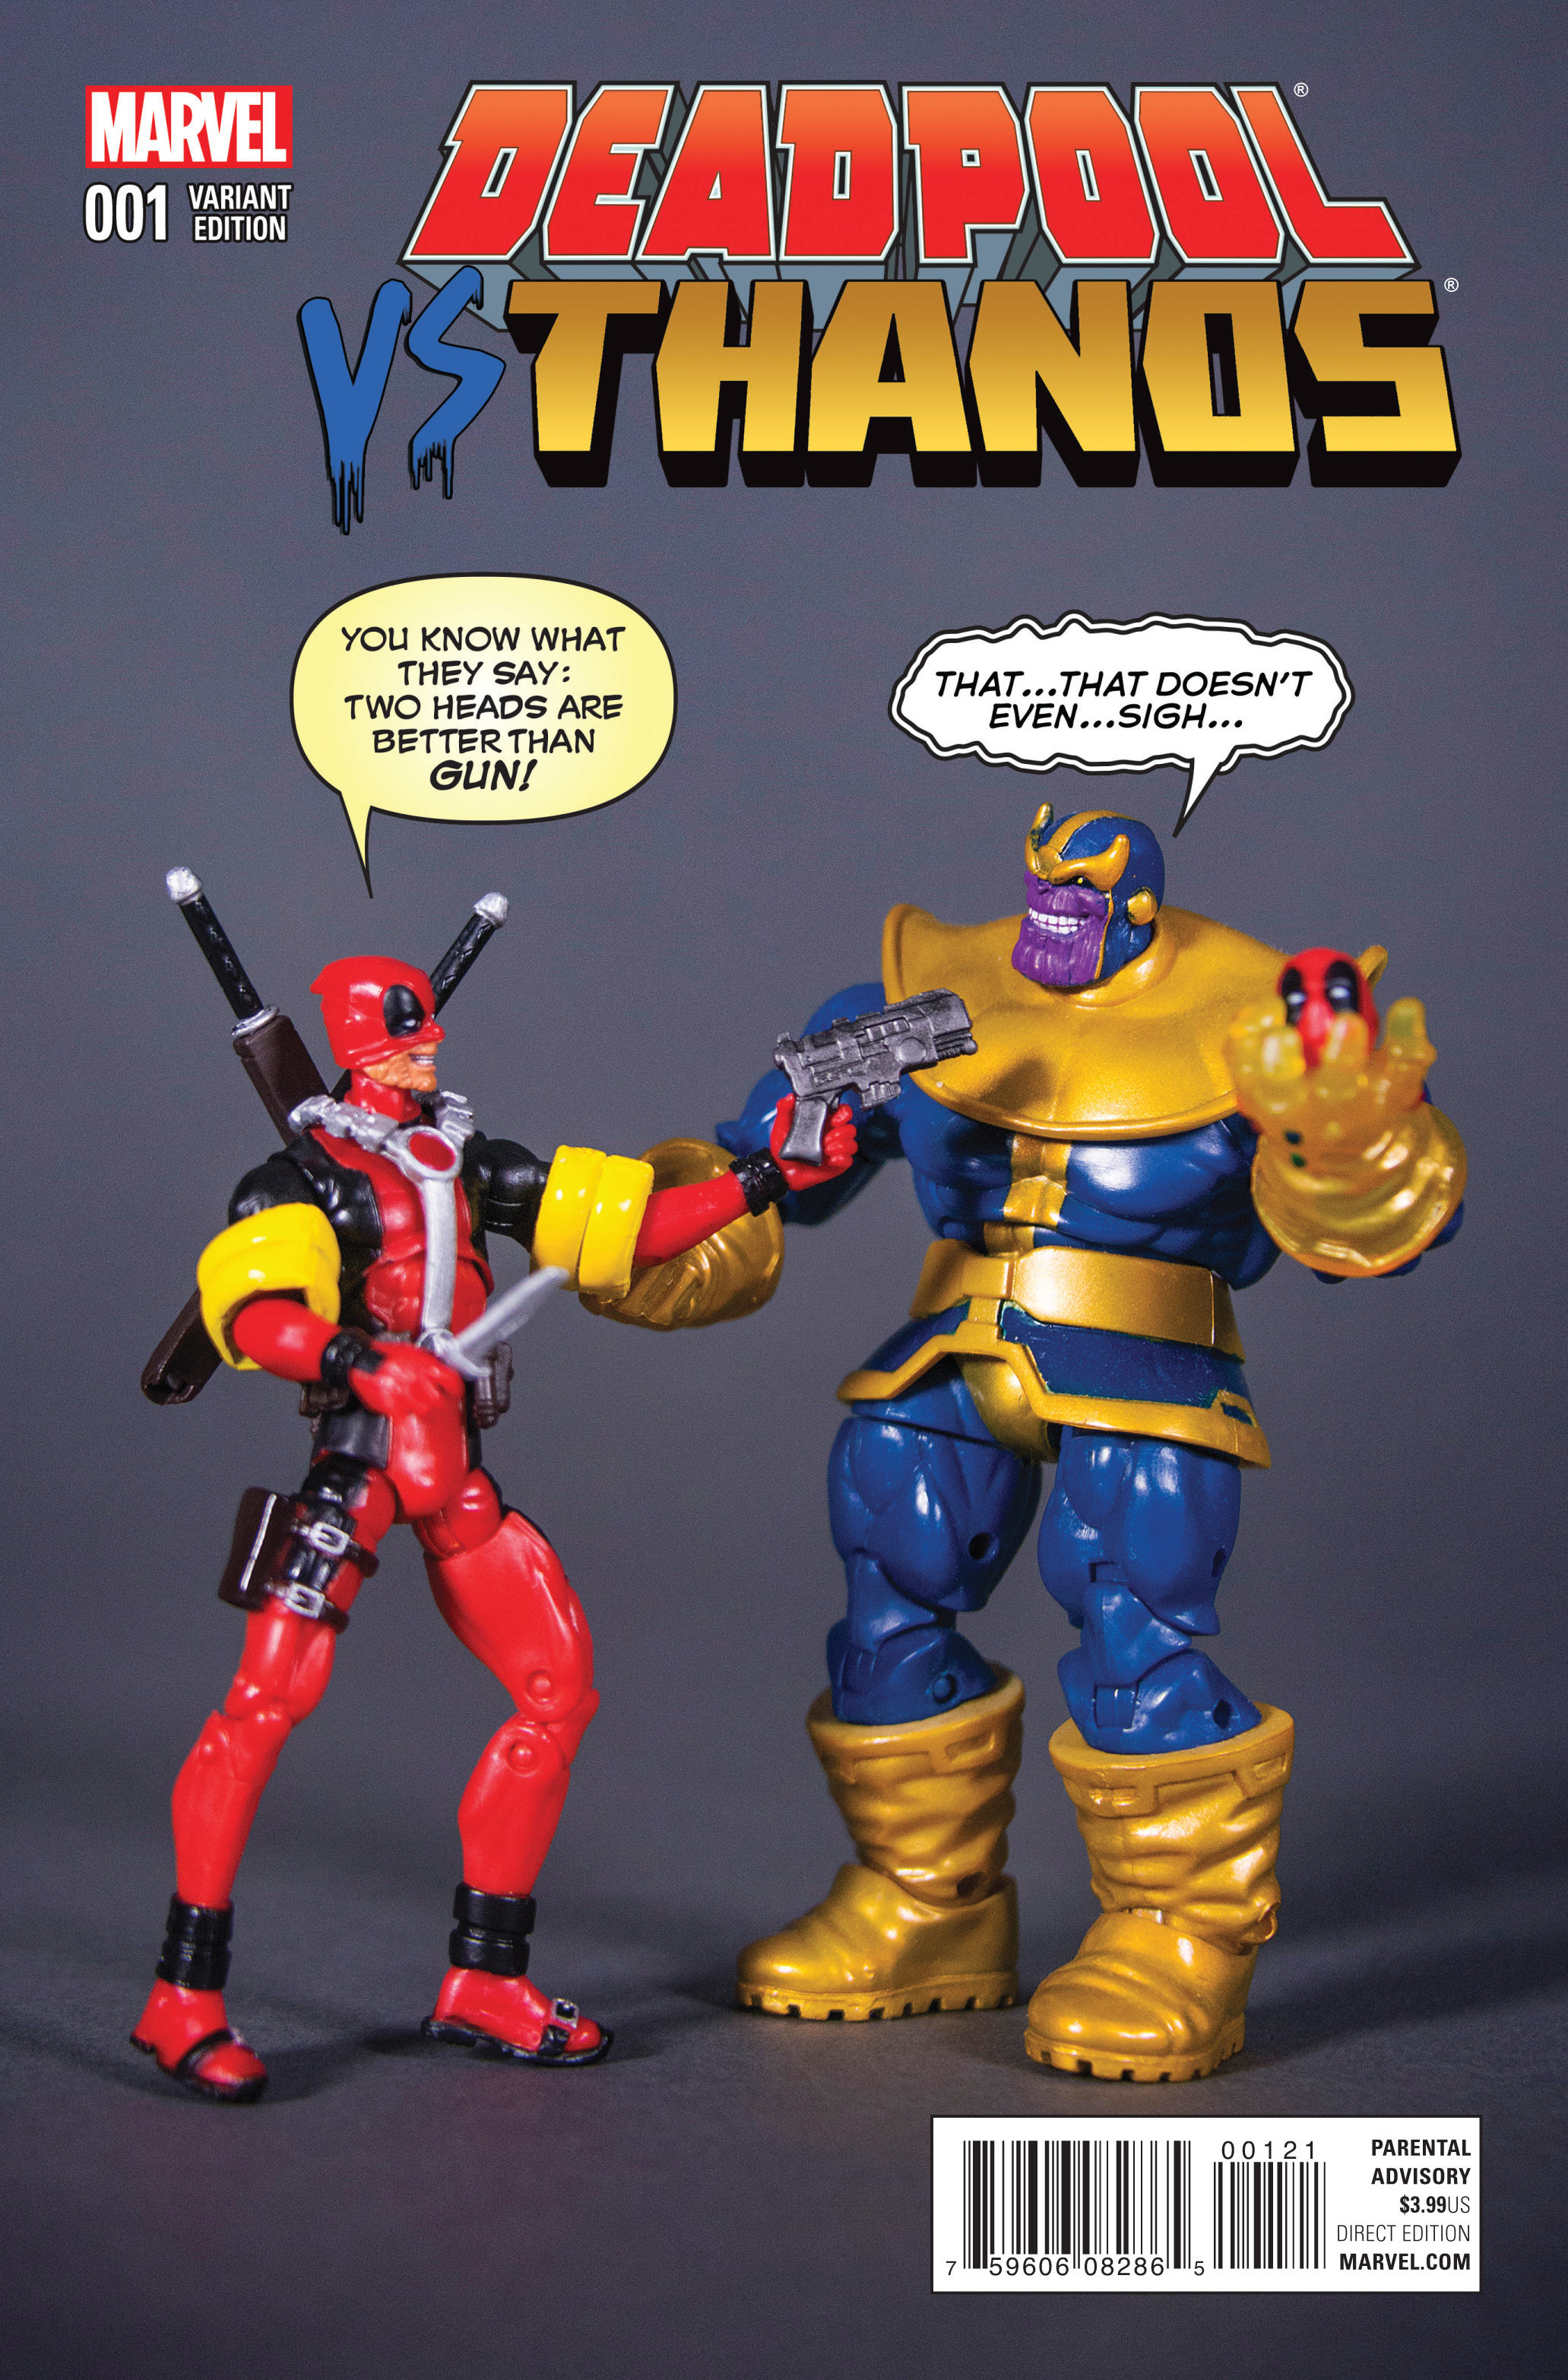 Thanos vs deadpool